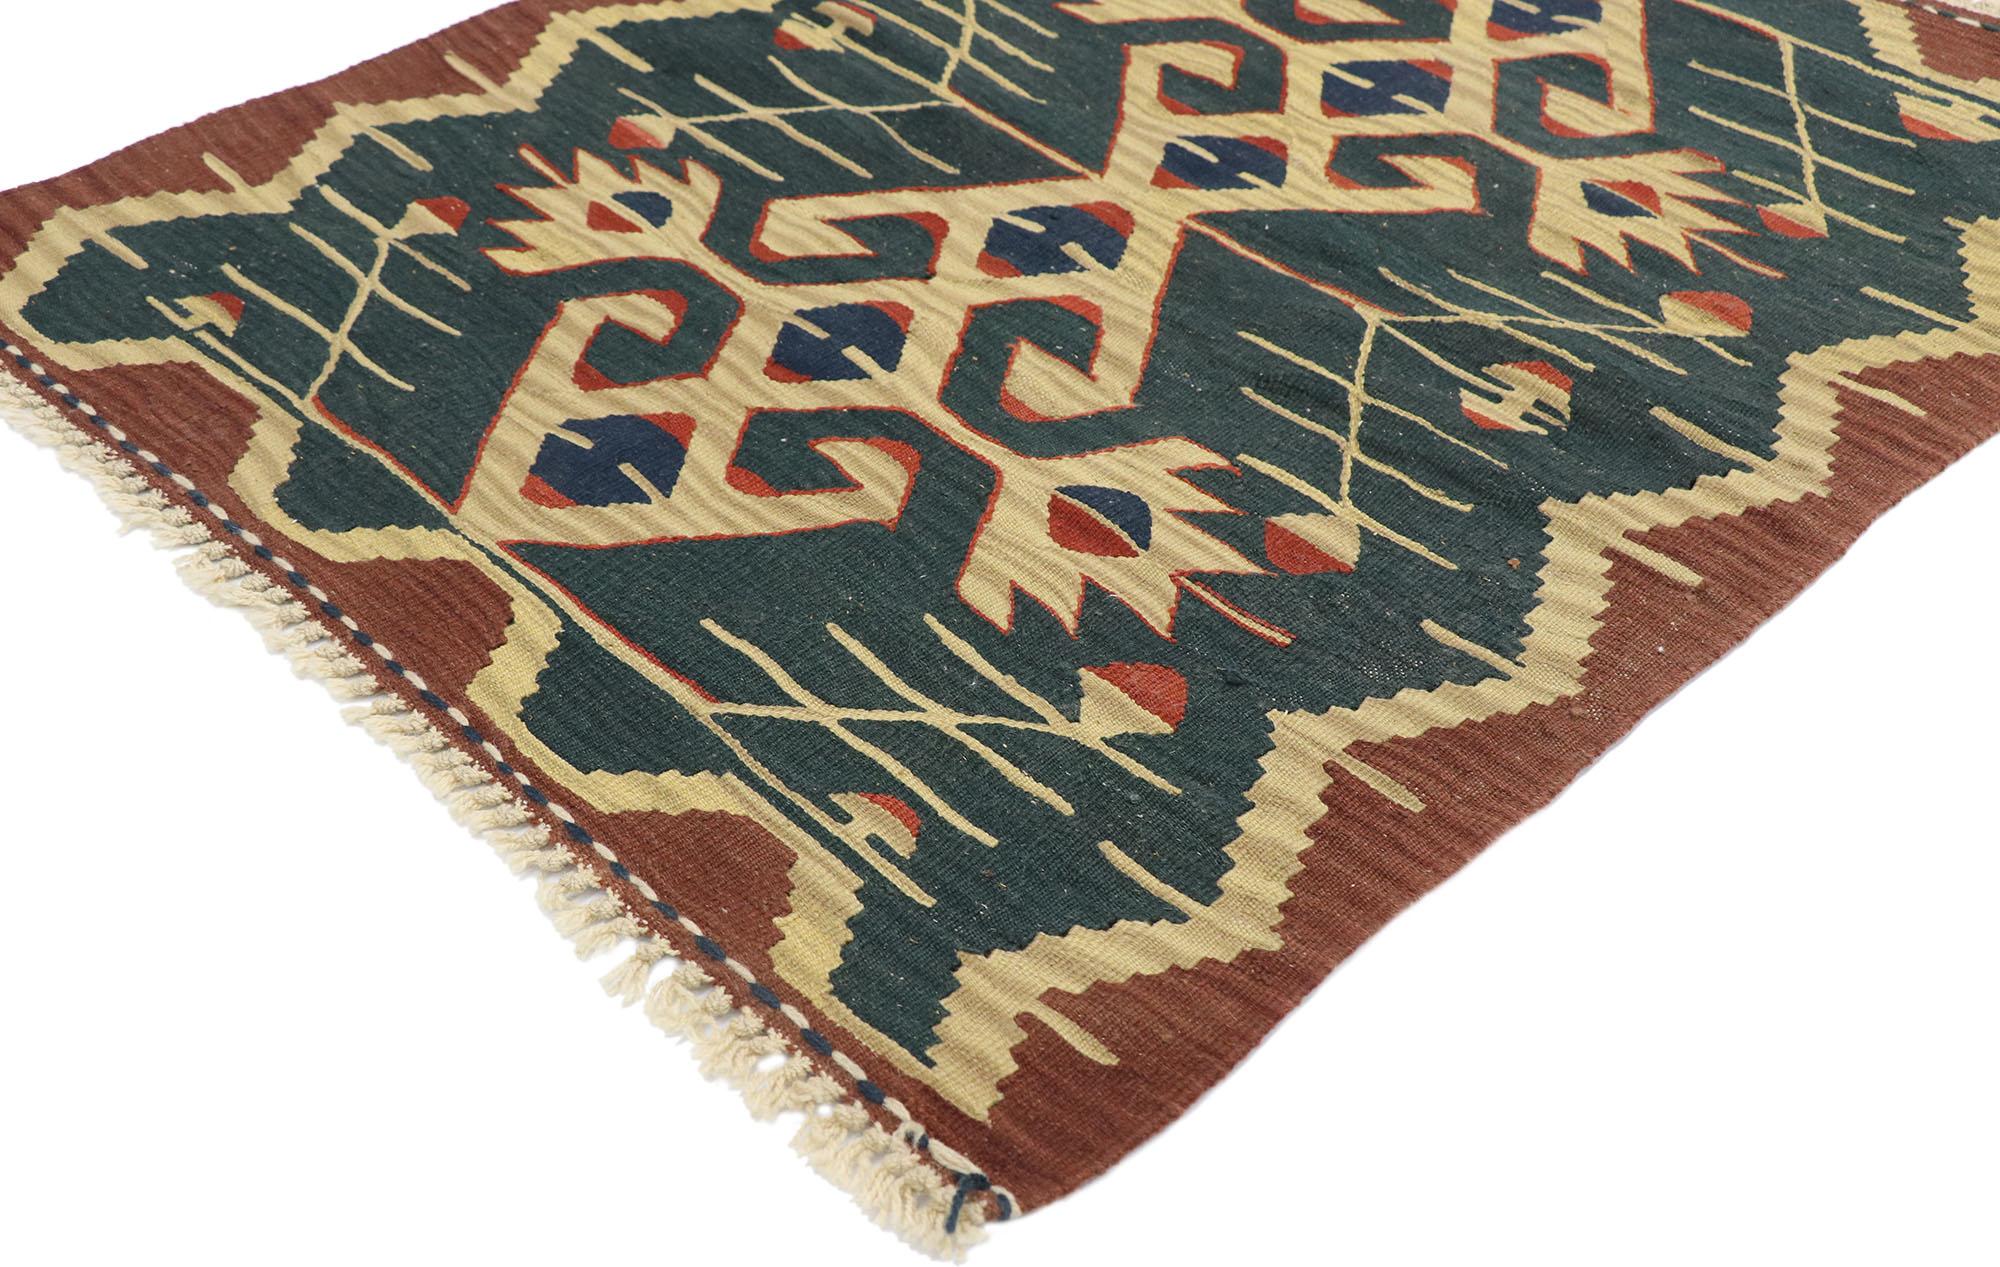 77851, tapis vintage Persan Shiraz Kilim avec style Tribal. Plein de petits détails et un design expressif audacieux combiné avec des couleurs vibrantes et un style tribal, ce tapis kilim persan vintage en laine tissé à la main est une vision